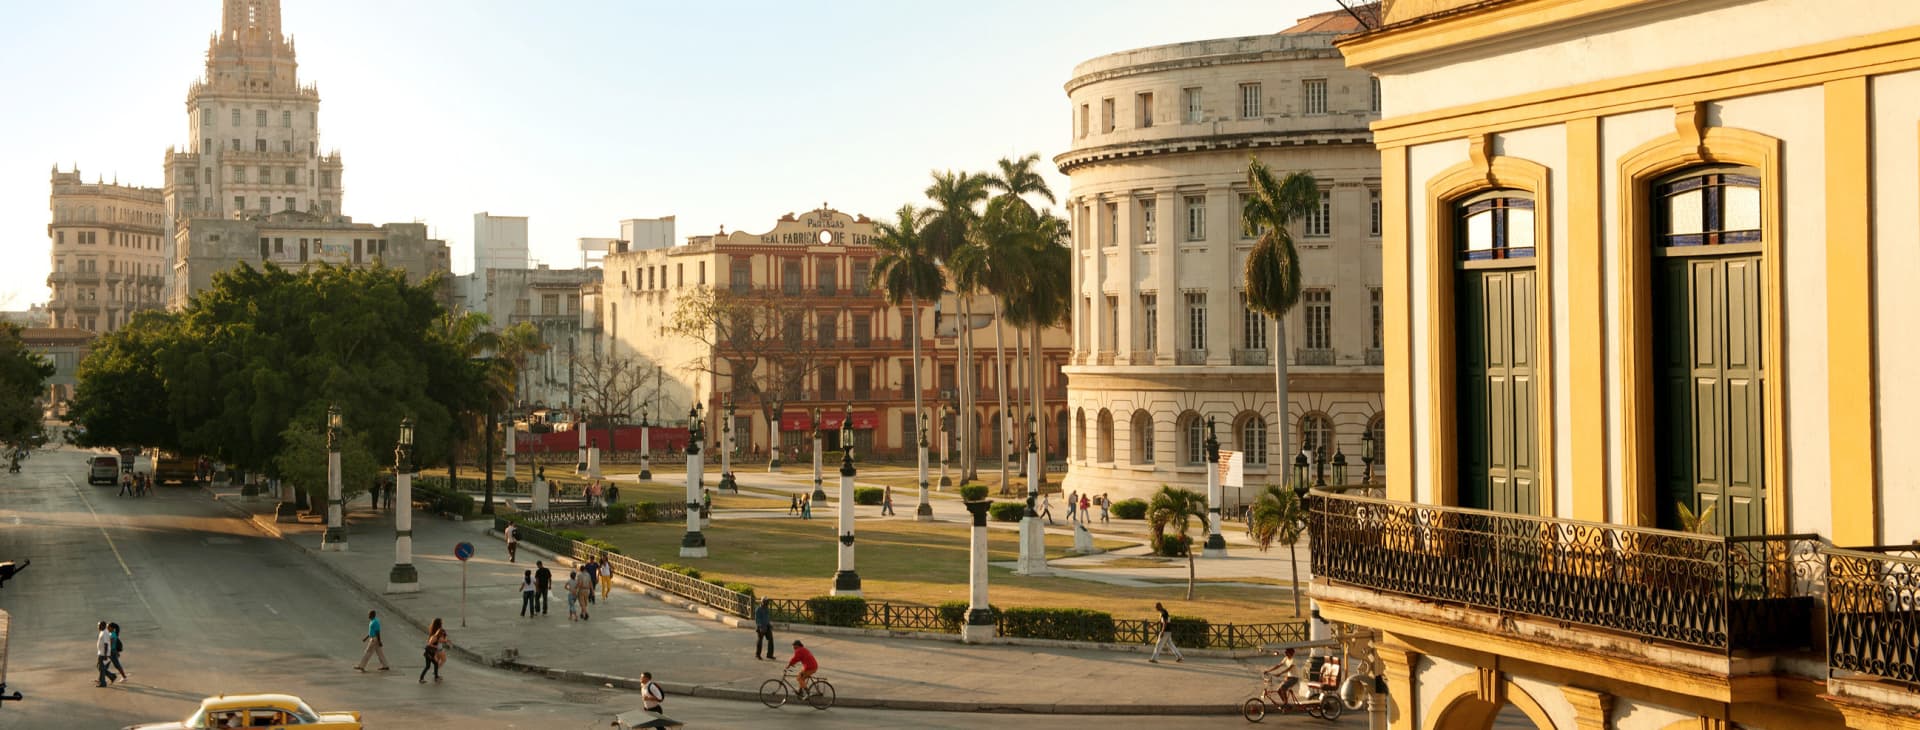 Wedge nær ved I virkeligheden Rejser til Havana (Cuba) - Find din ferie her | Spies